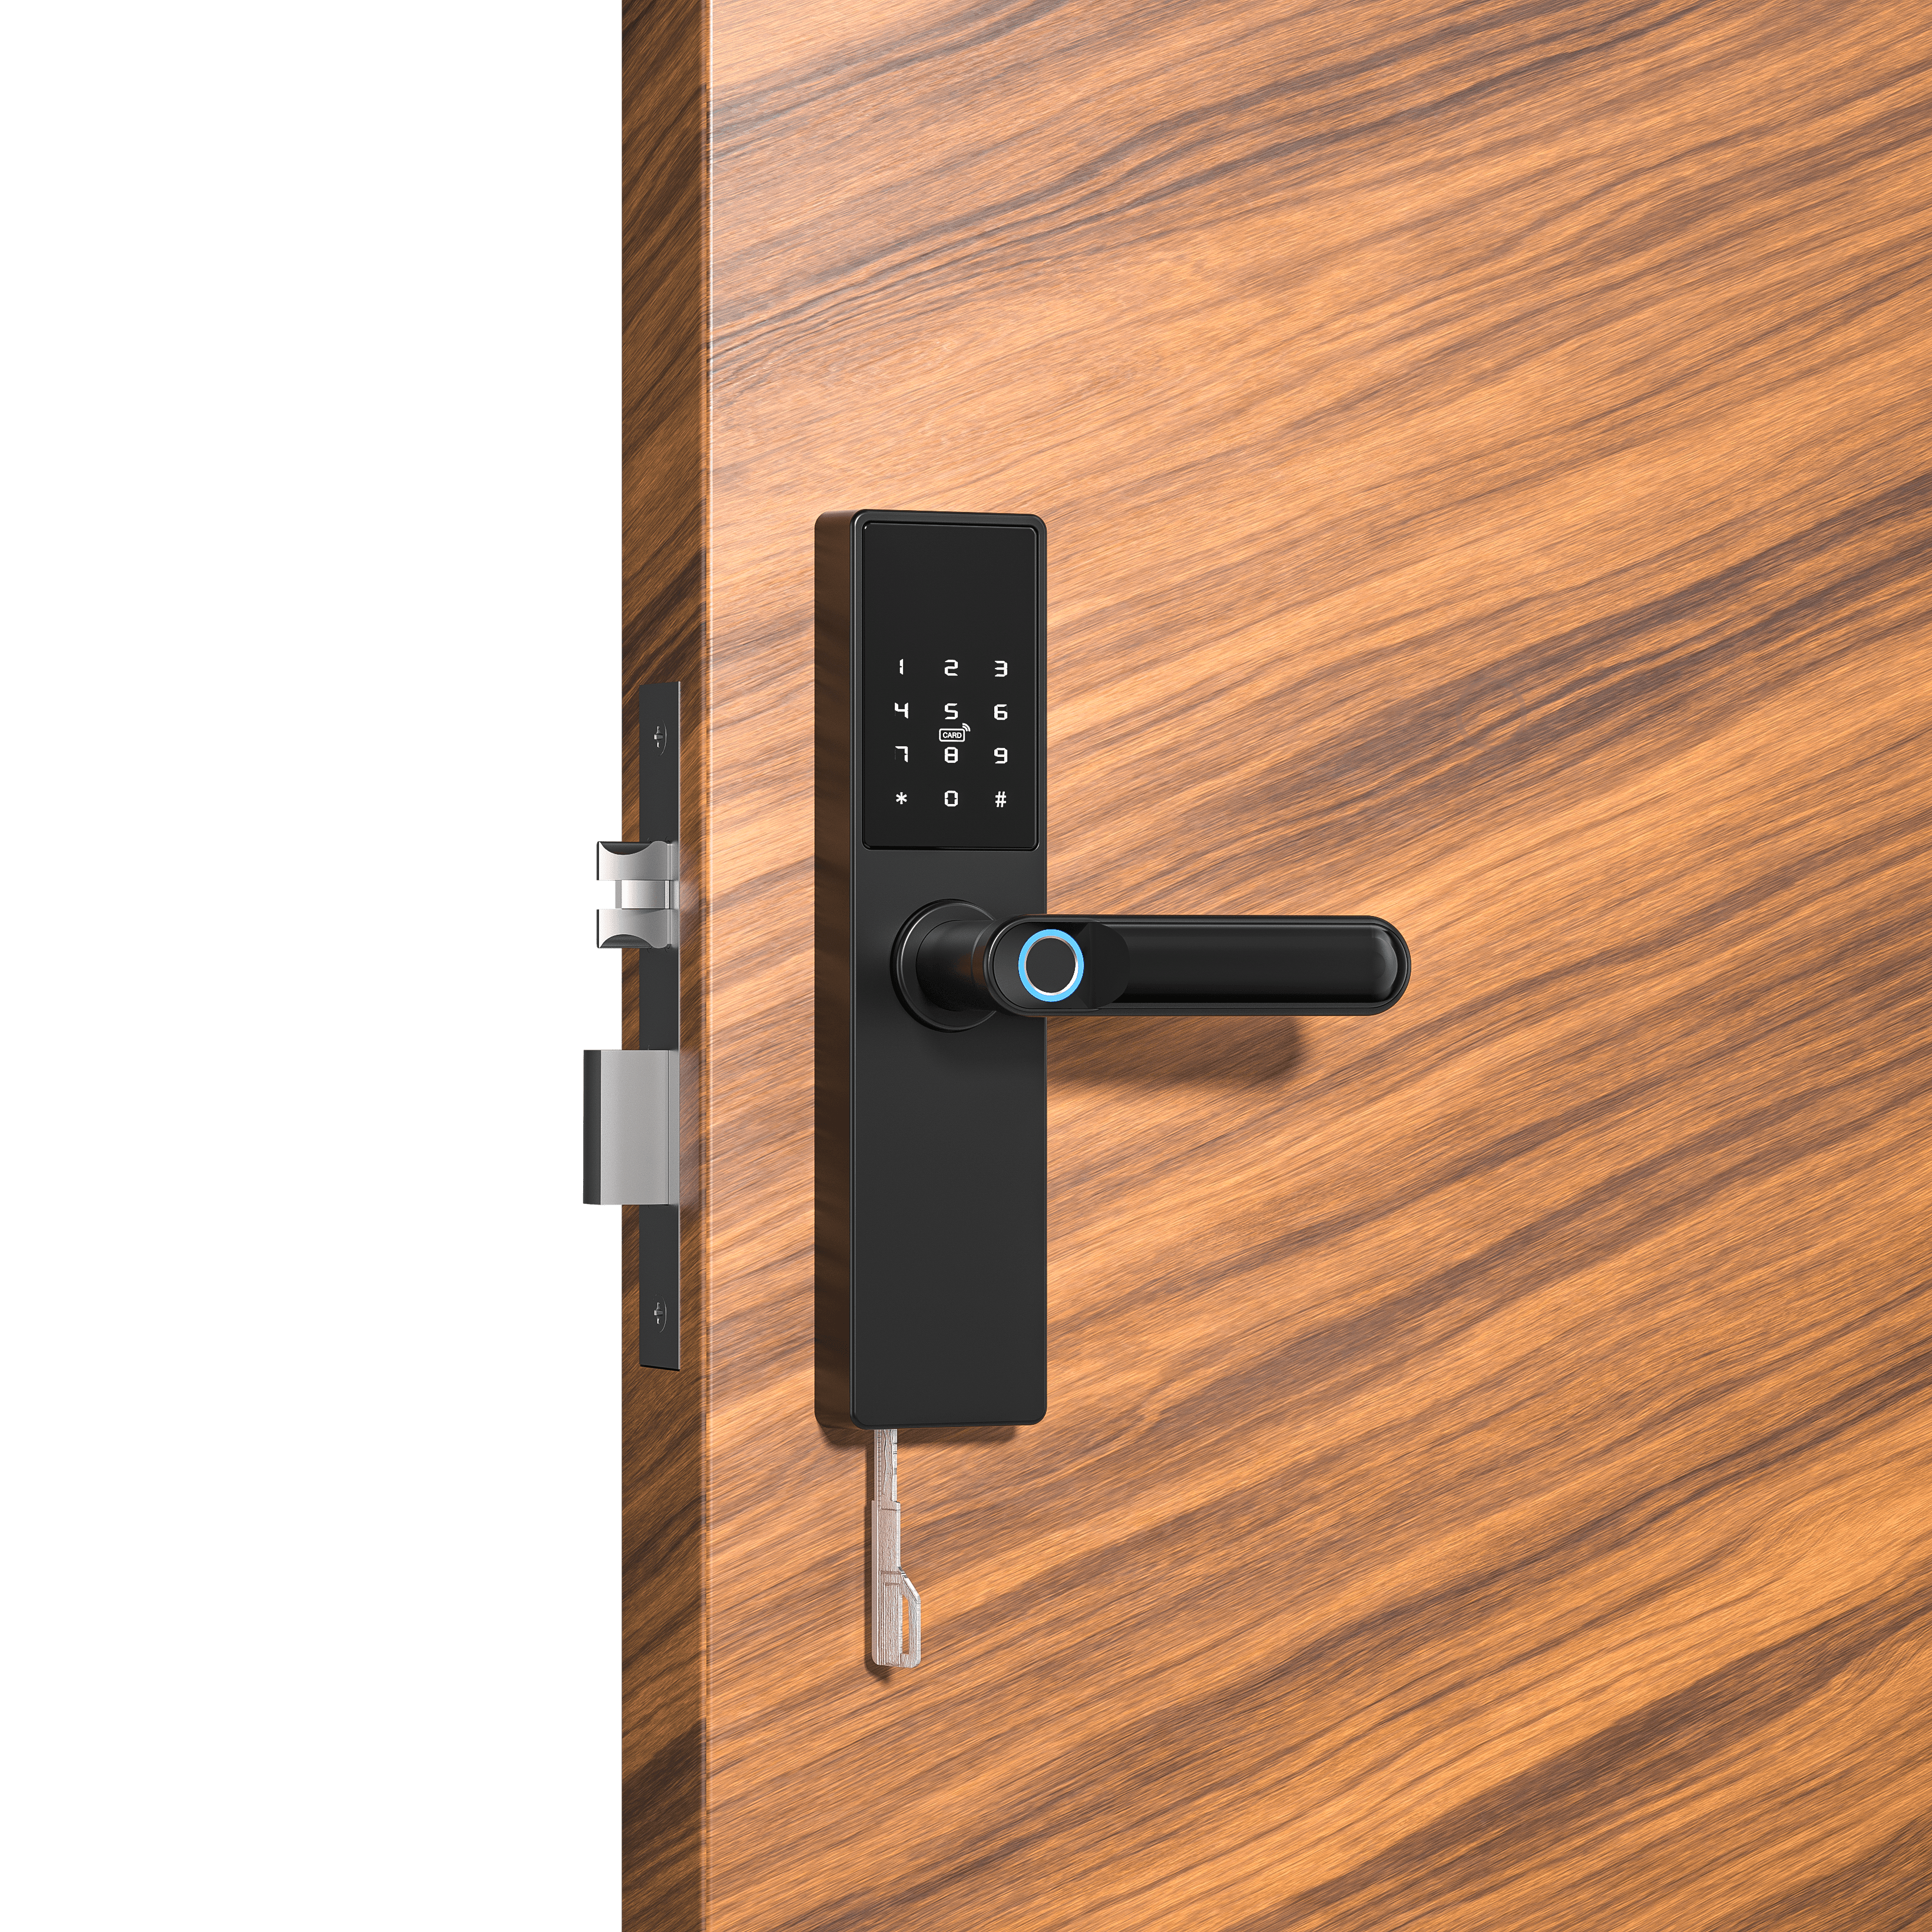 Inteligentna klamka do drzwi Tuya, Elektroniczny zamek do drzwi na odcisk palca, kod, Wi-Fi, RFID - czarna